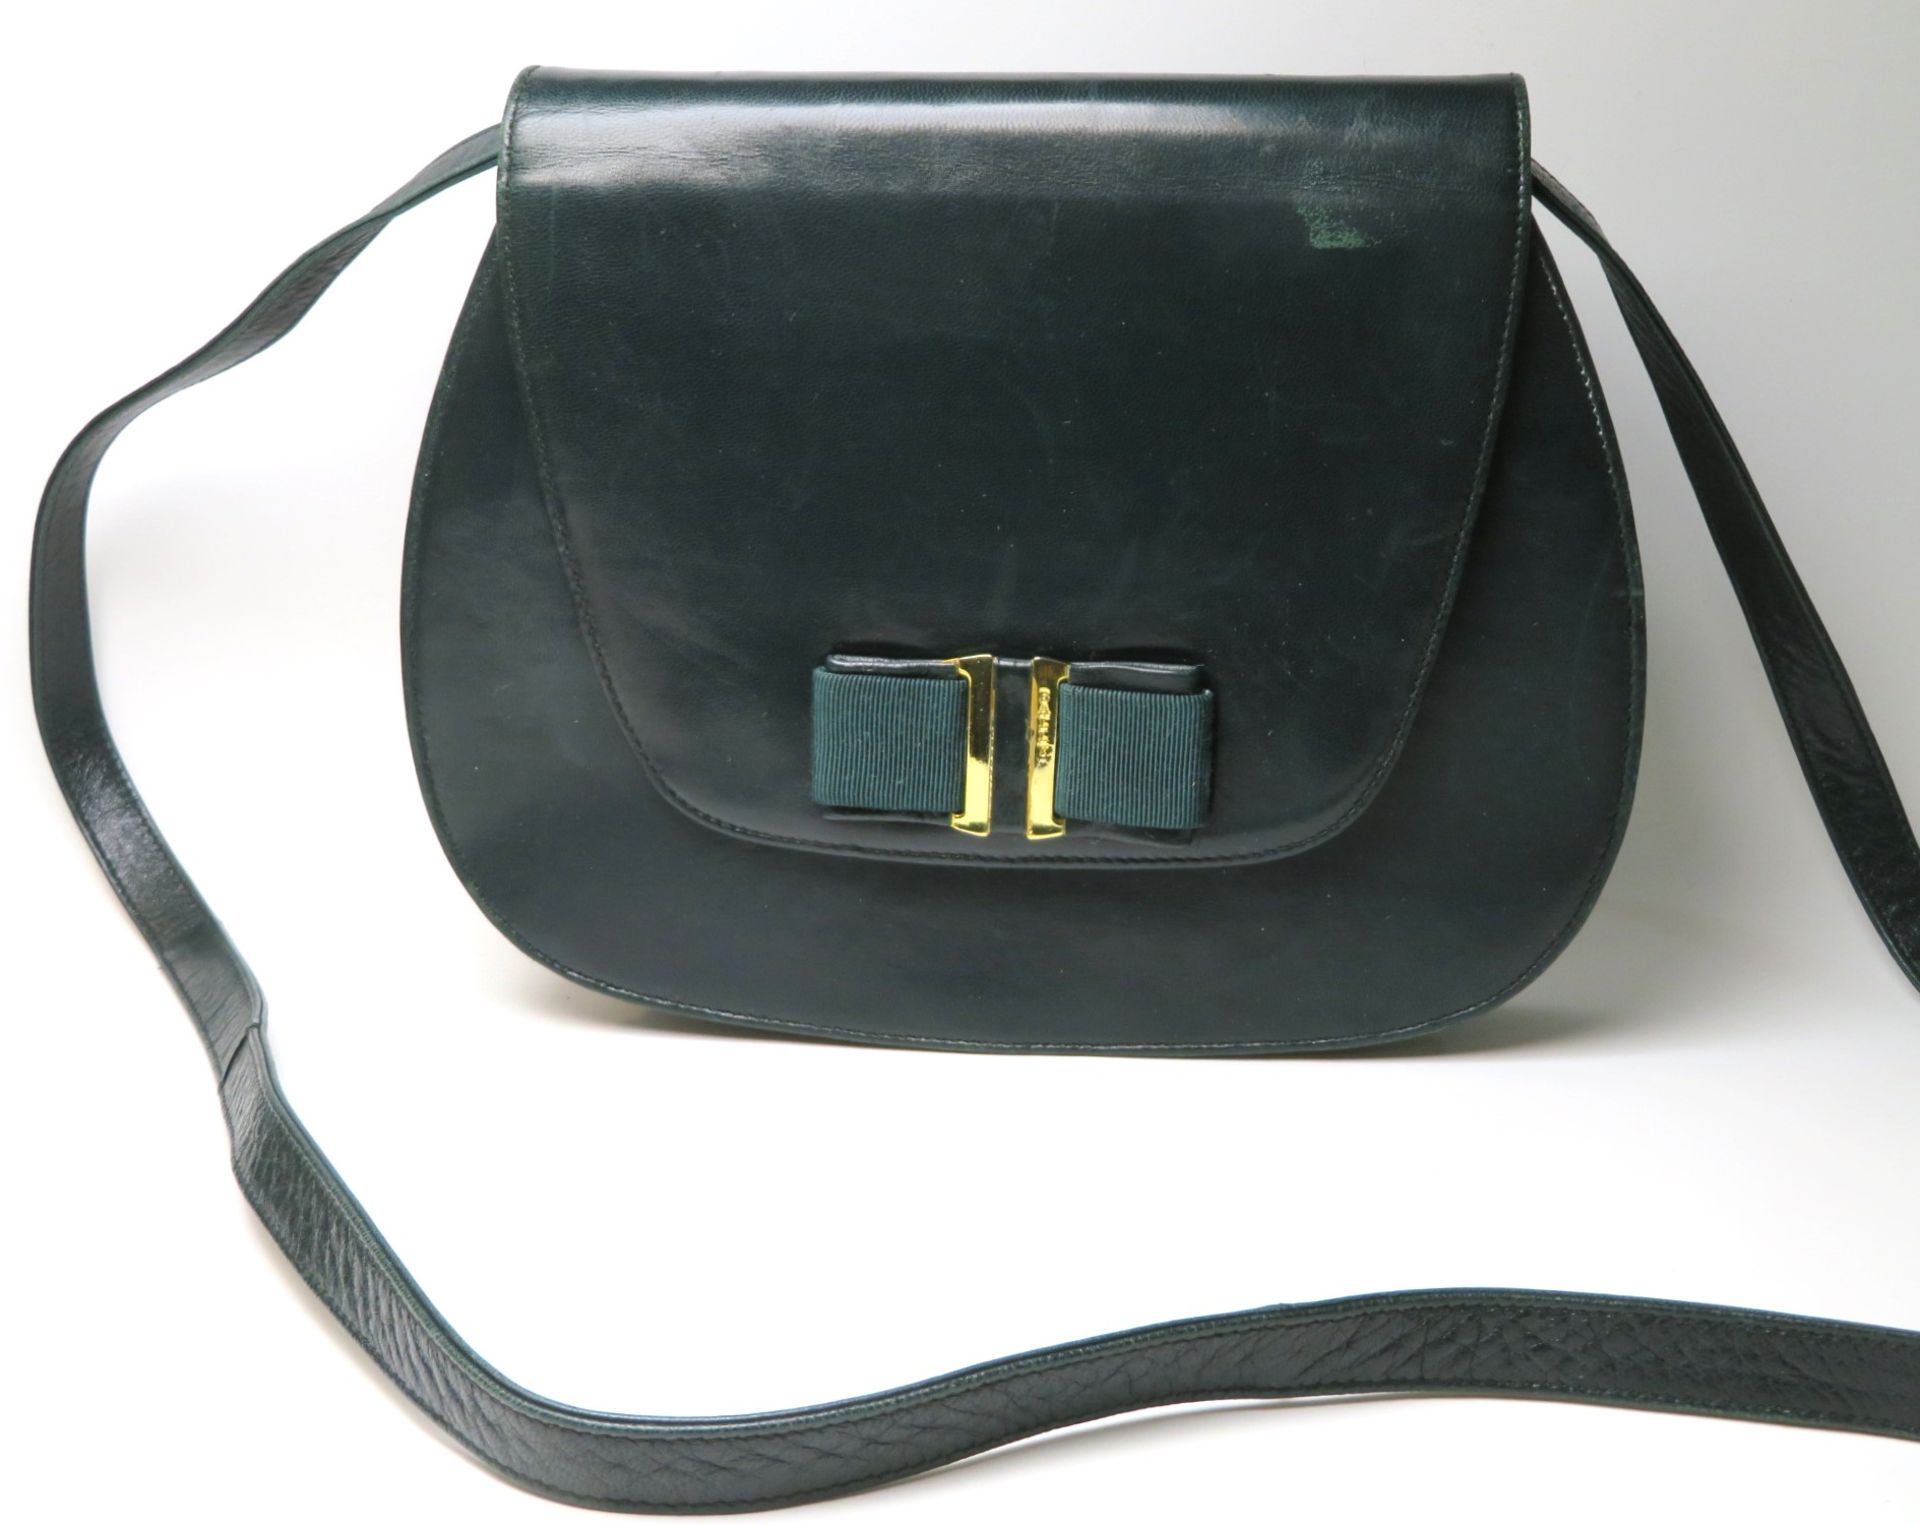 Handtasche zum Umhängen, Bally, grünes Leder, 23 x 18 x 3,5 cm.